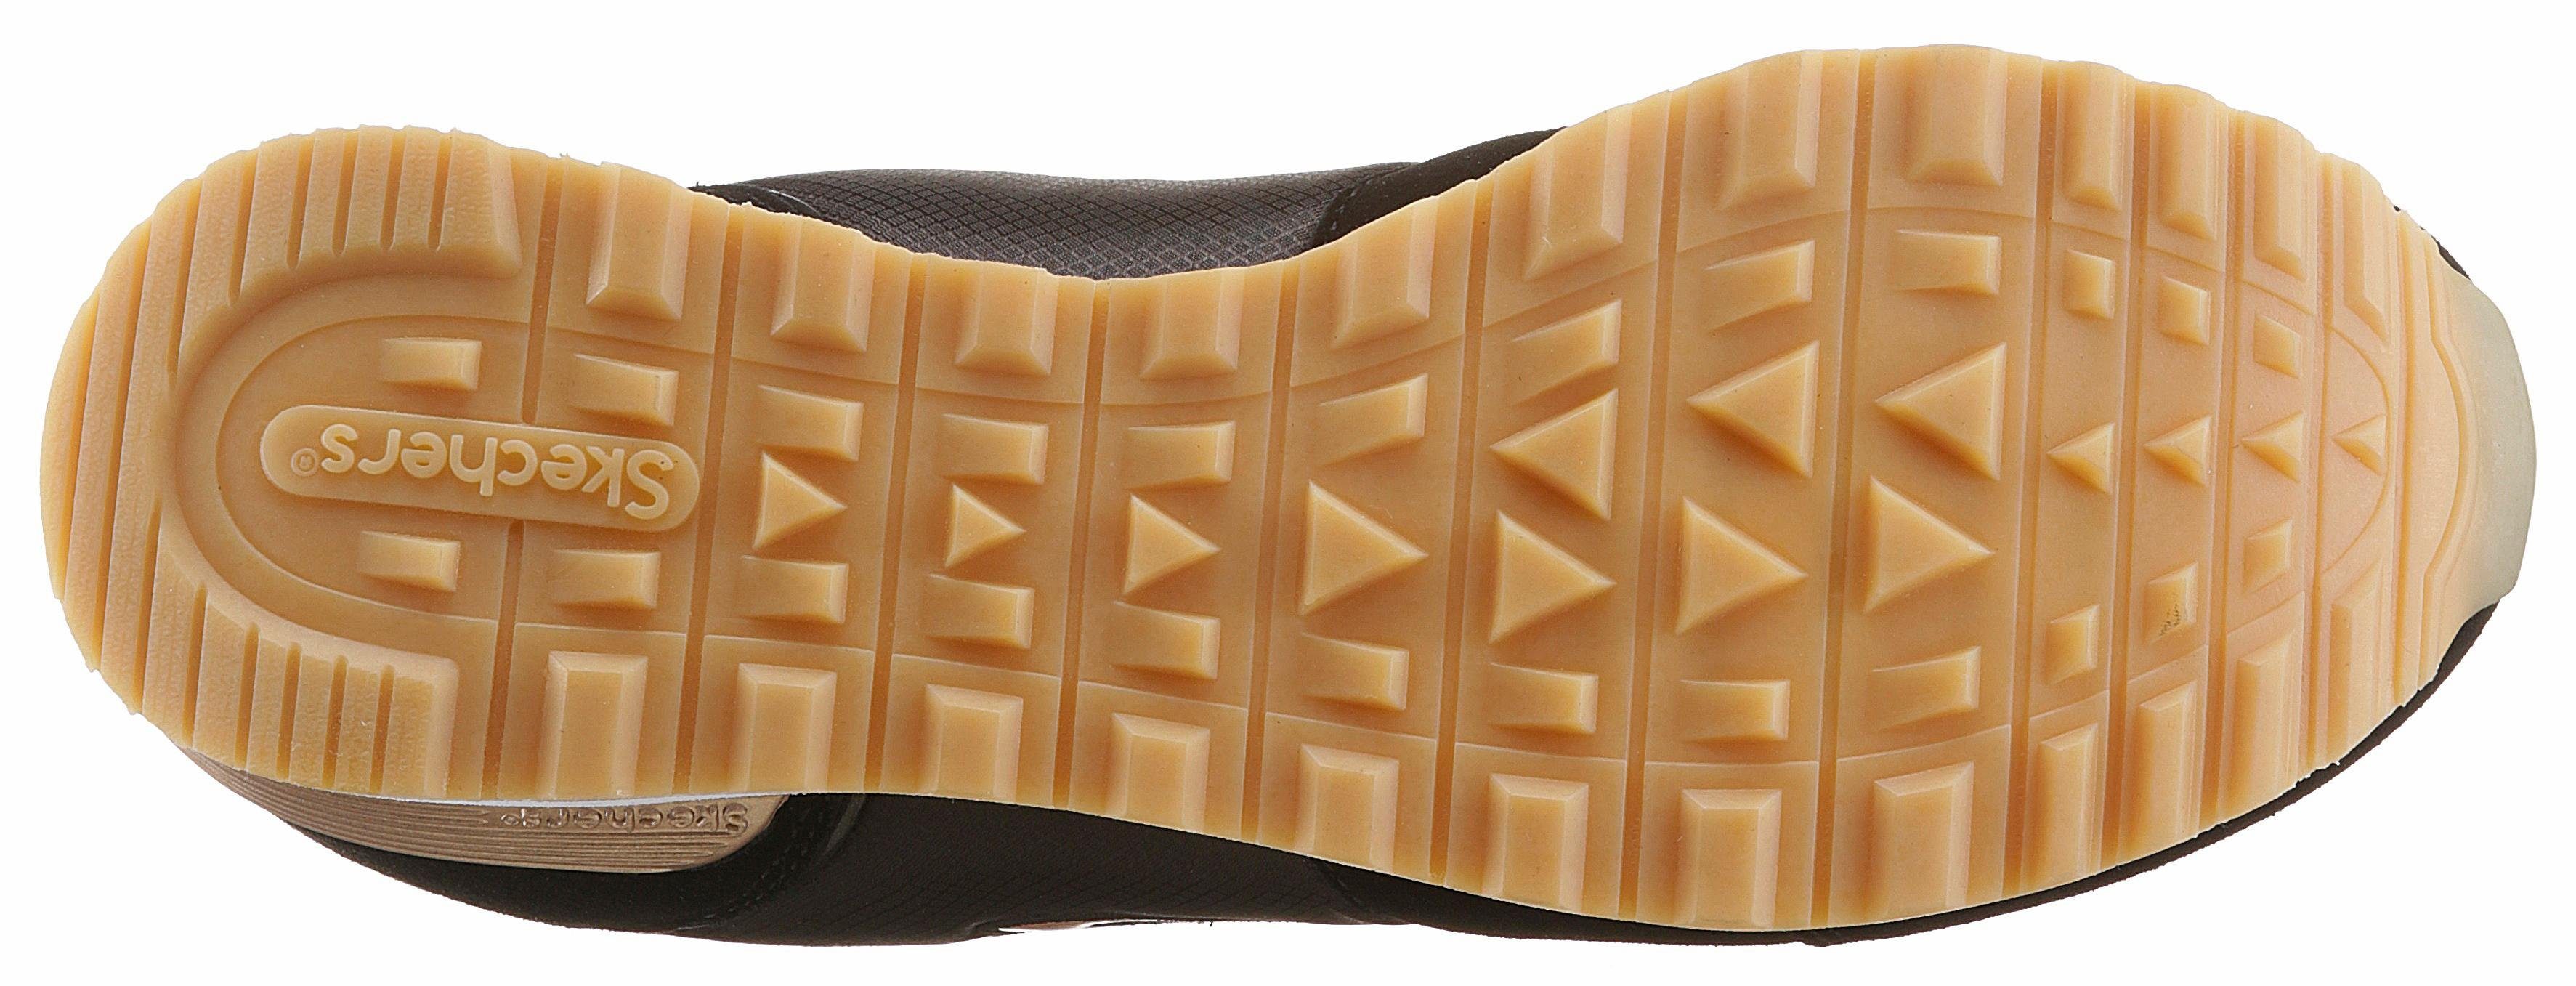 Skechers OG 85 - Ausstattung Air-Cooled schwarz-goldfarben GURL mit Sneaker komfortabler Foam Memory GOLDN